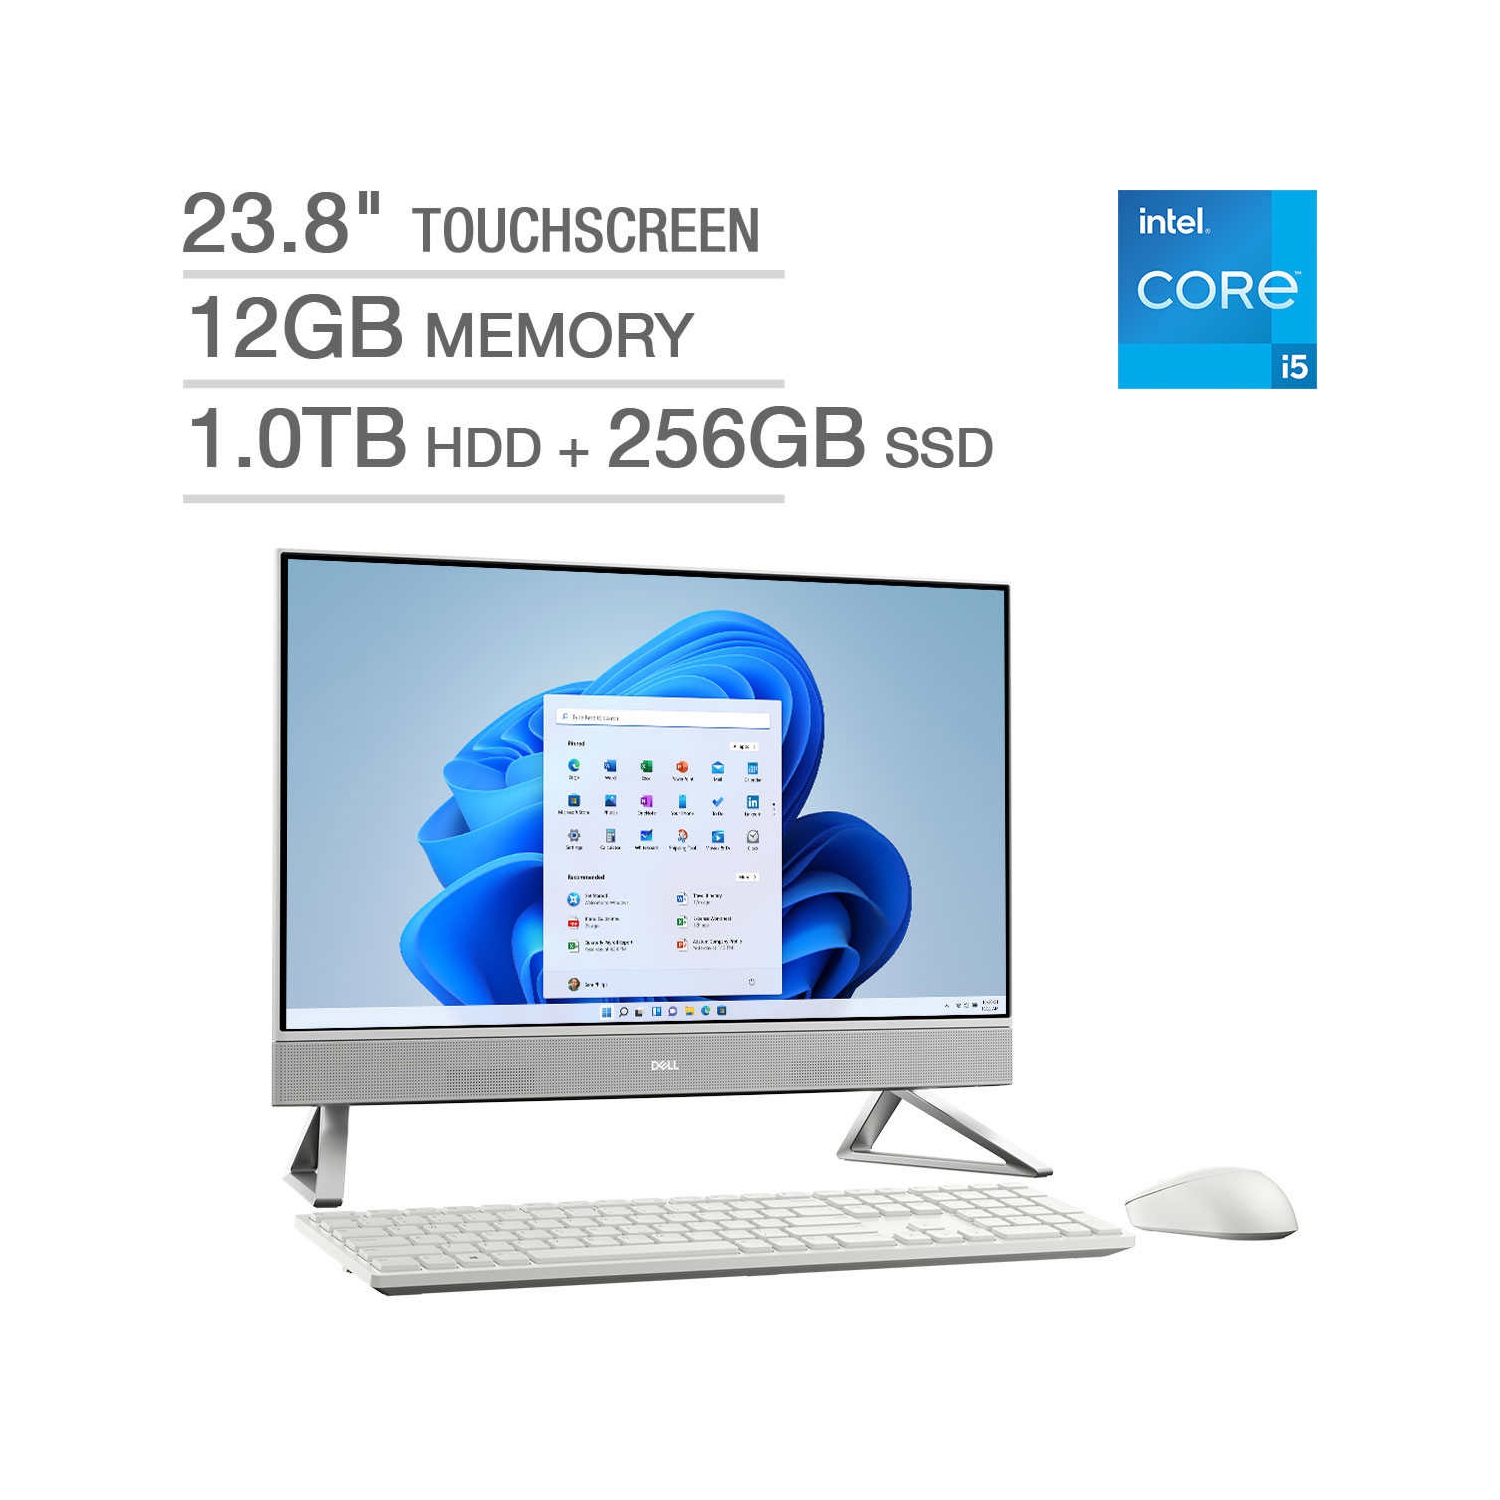 Dell Inspiron 23.8" 5410 All-in-One Touchscreen Desktop - 12th Gen Intel Core i5-1235U - 1080p - Windows 11 - 12 GB - 1 TB HDD + 256 GB SSD - Open Box